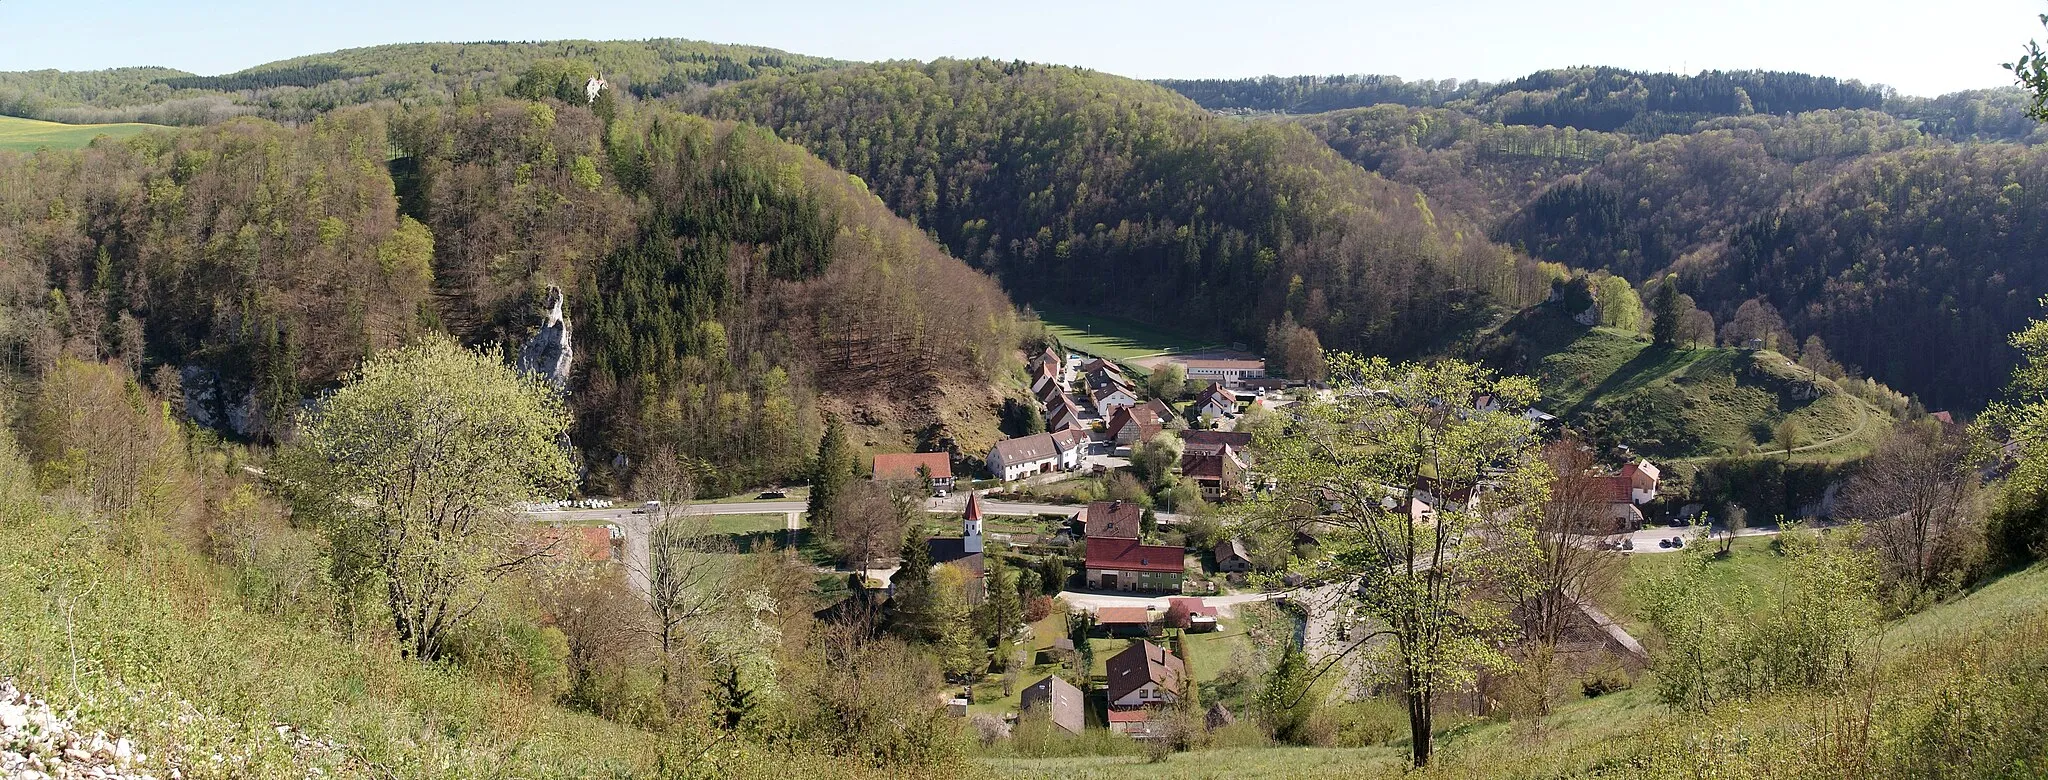 Photo showing: Blick von der Anhöhe Hartberg aus nach Seeburg (Bad Urach).
Panorama aus drei Fotos.